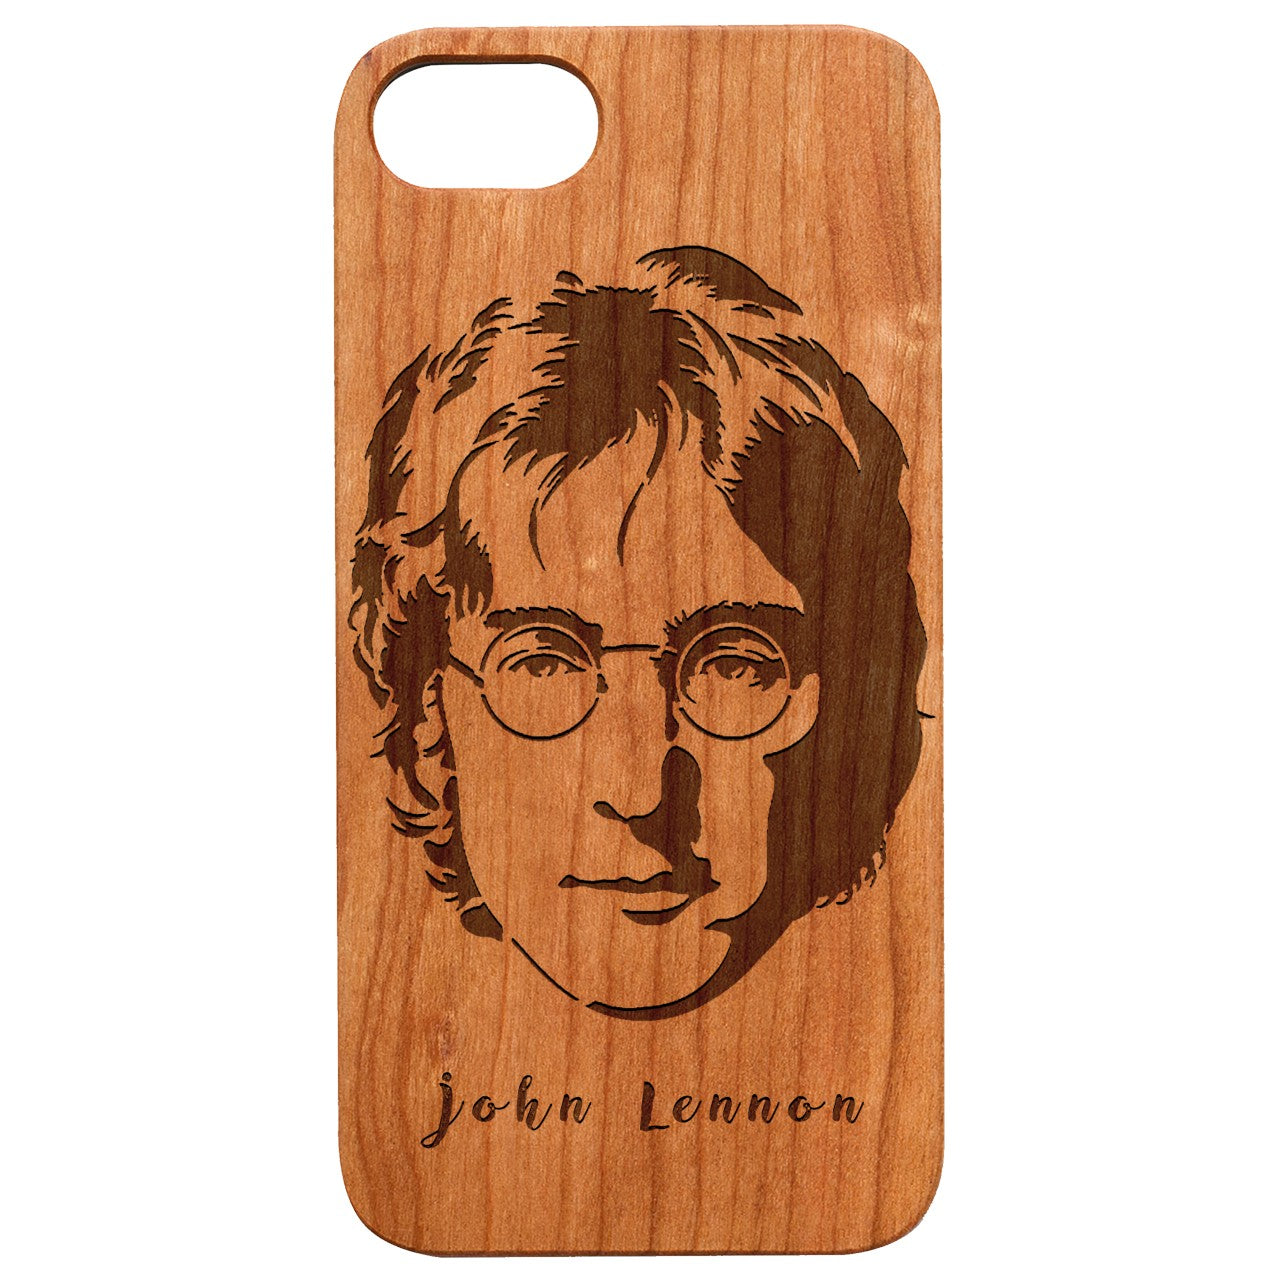  John Lennon - Engraved - Wooden Phone Case - IPhone 13 Models